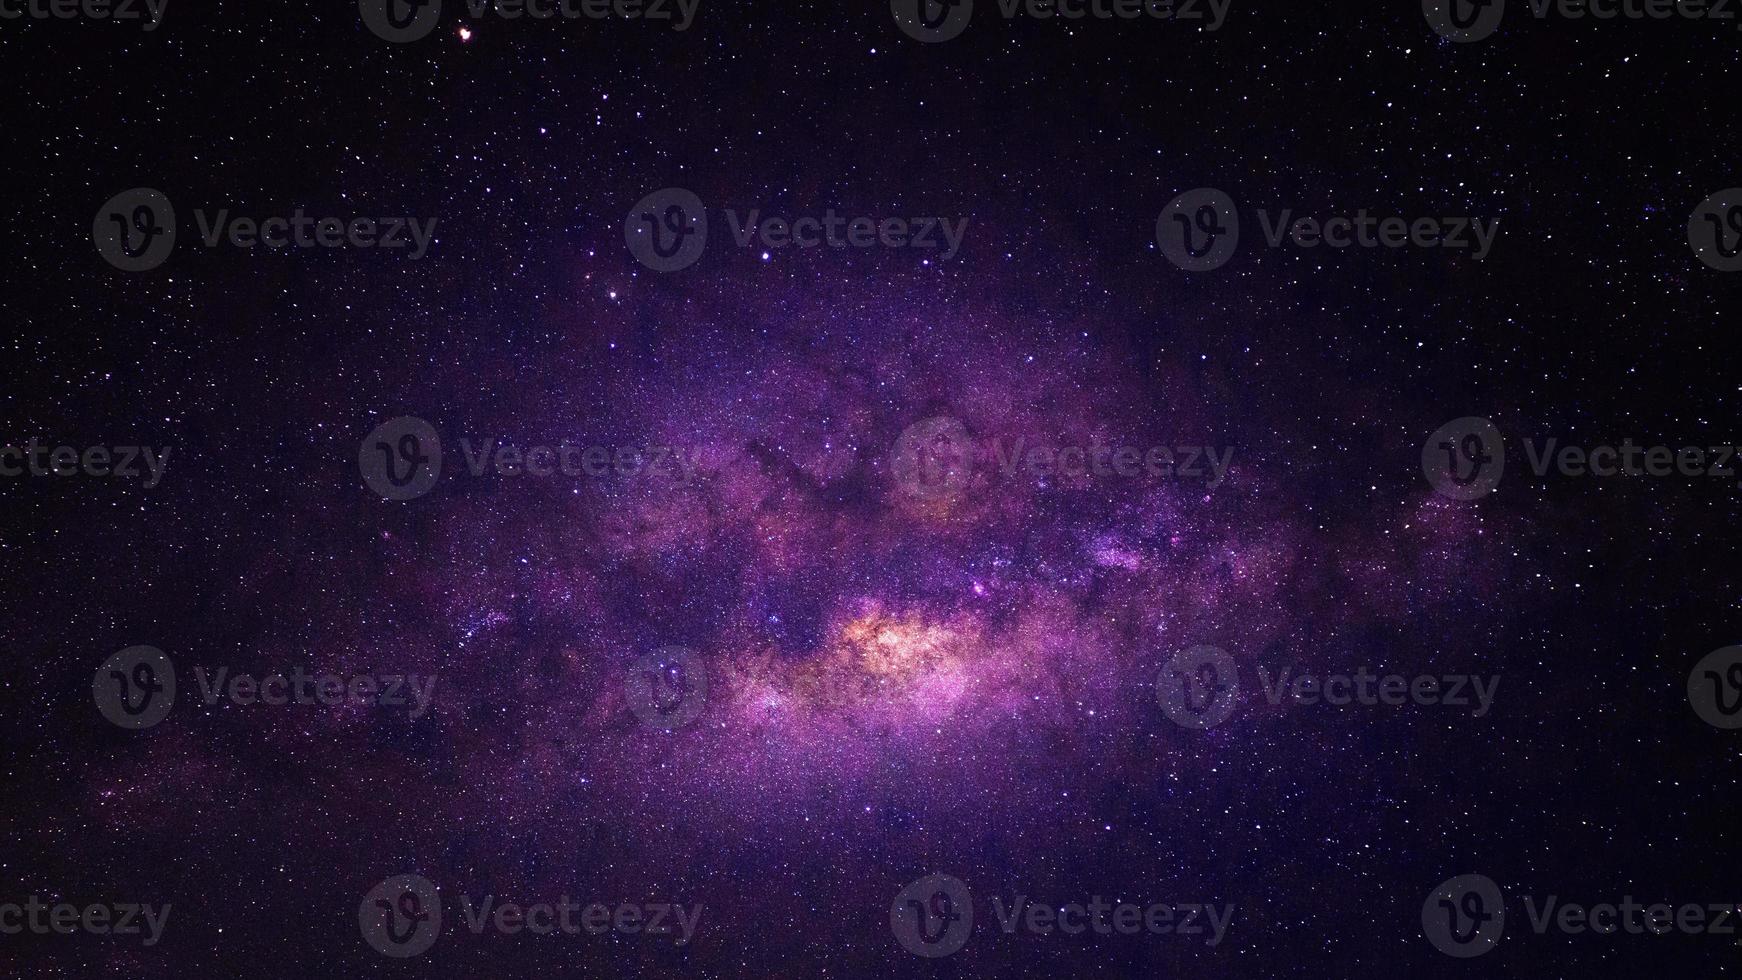 panorama dramatique violet de nuit de galaxie de l'espace d'univers de lune sur le ciel nocturne photo